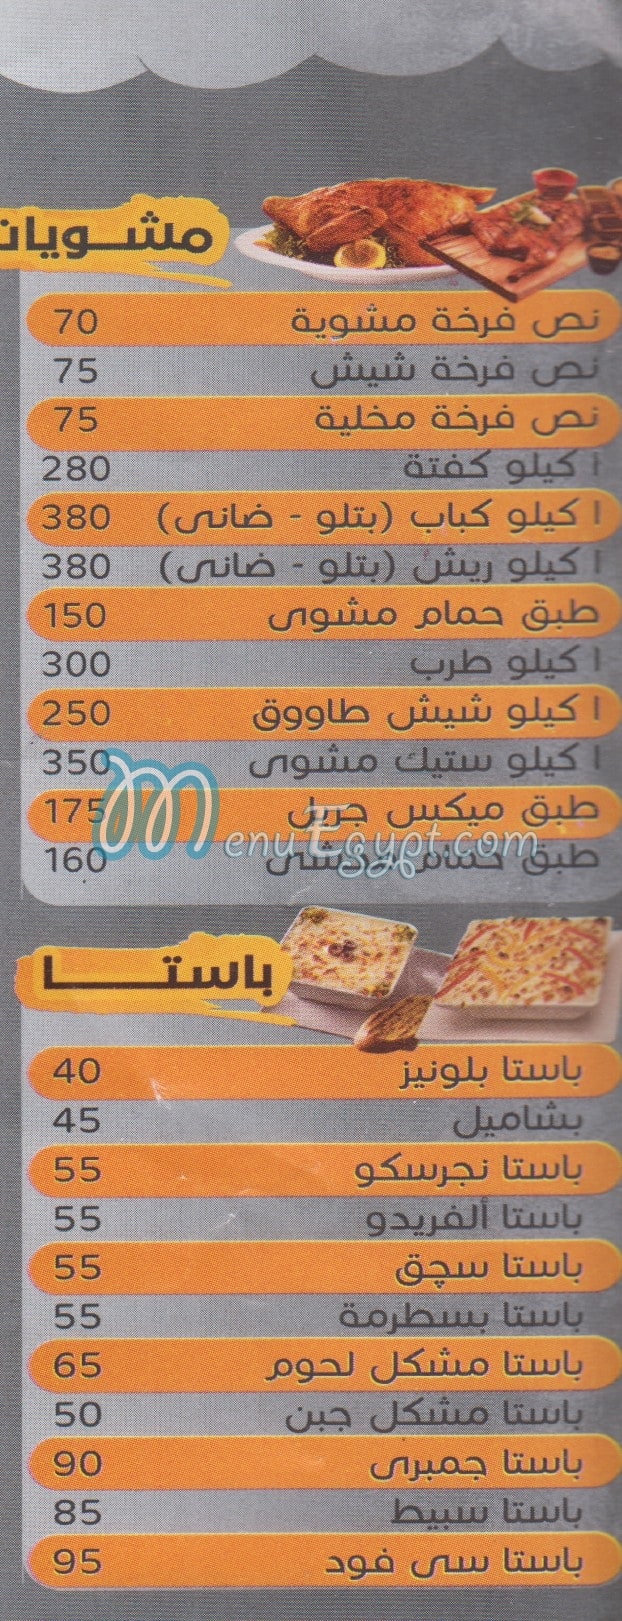 Koshary El Haram menu Egypt 1